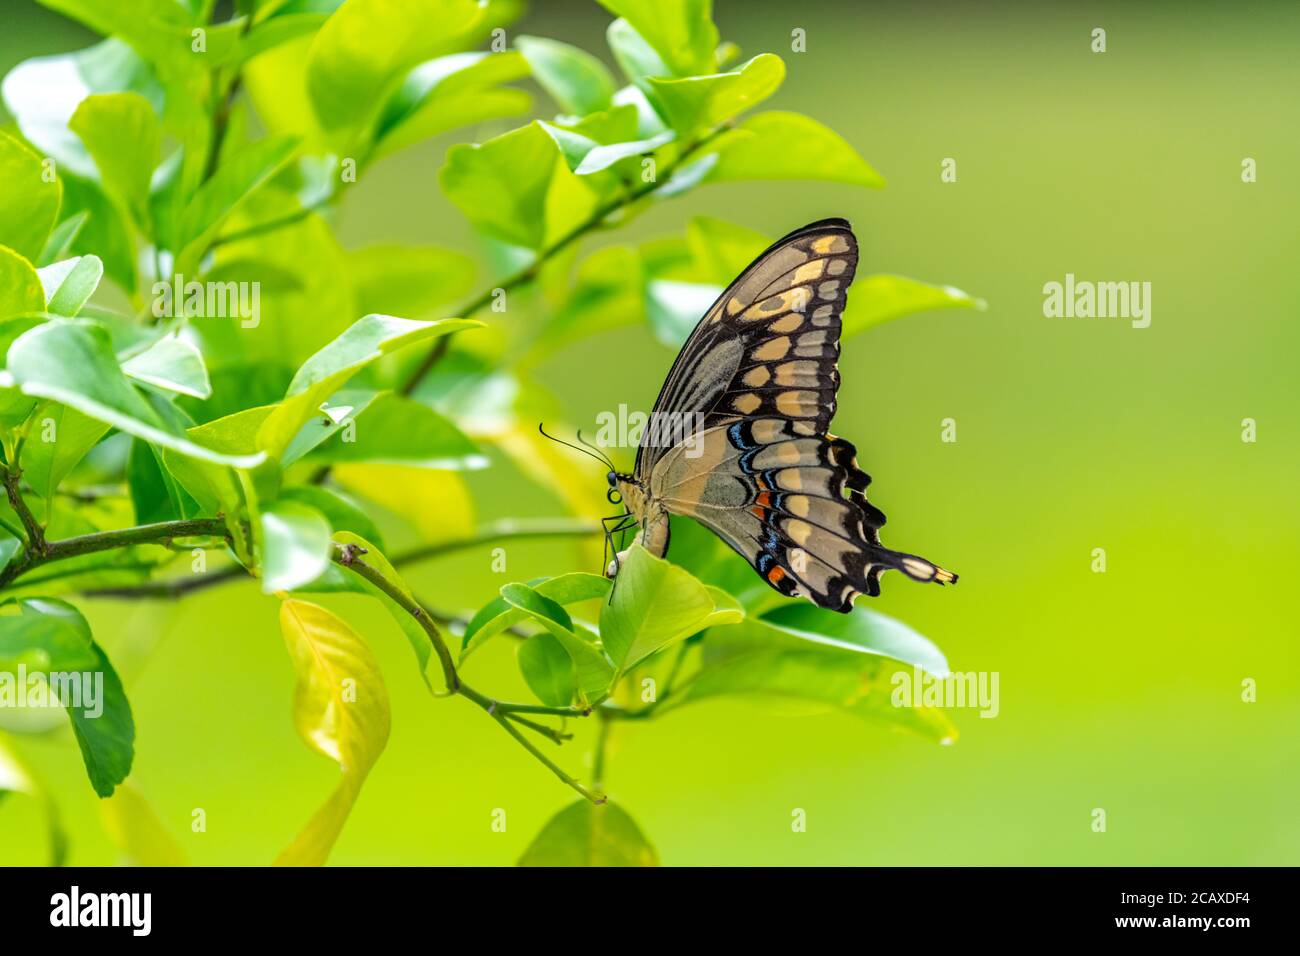 Une queue de cygne femelle de l'est (Papilio créphontes) qui pond un œuf (juste visible) sur un citronnier. Banque D'Images